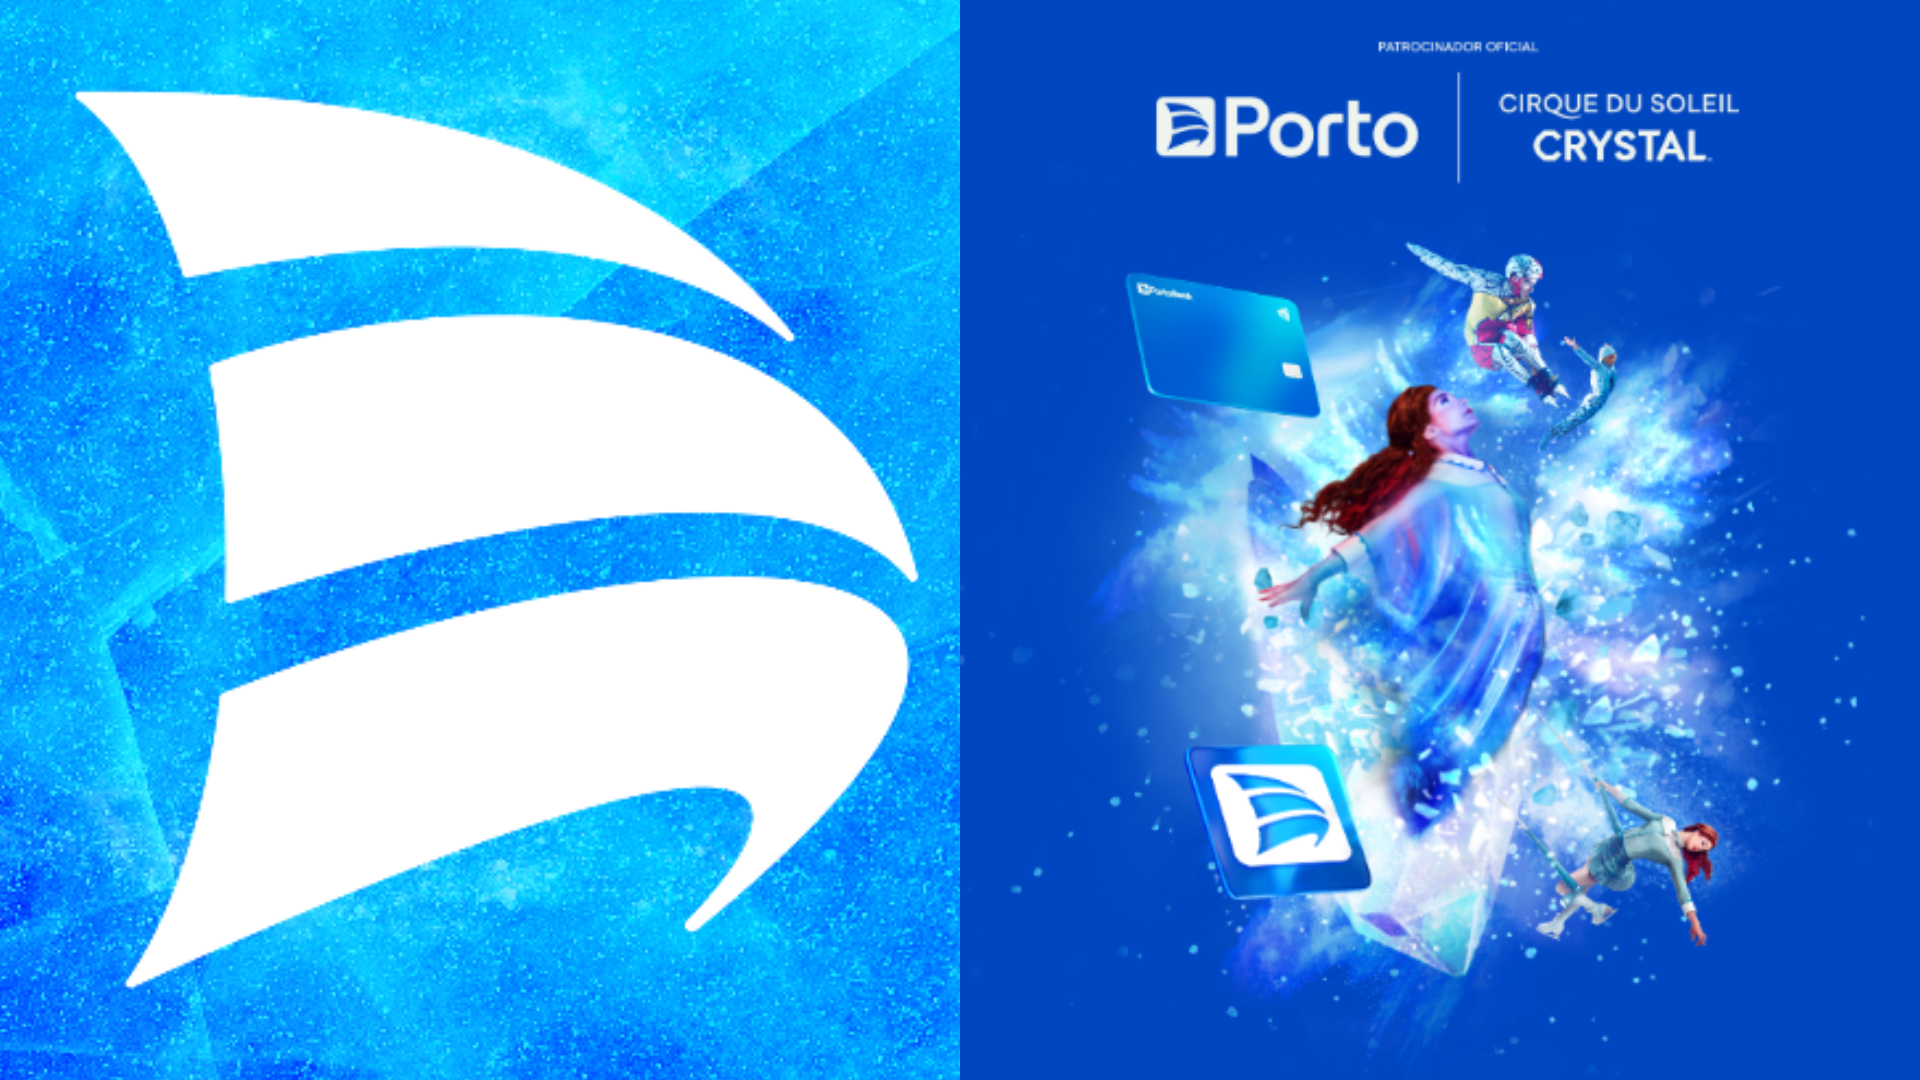 Porto adota nova identidade visual em seu app para temporada do Cirque du Soleil